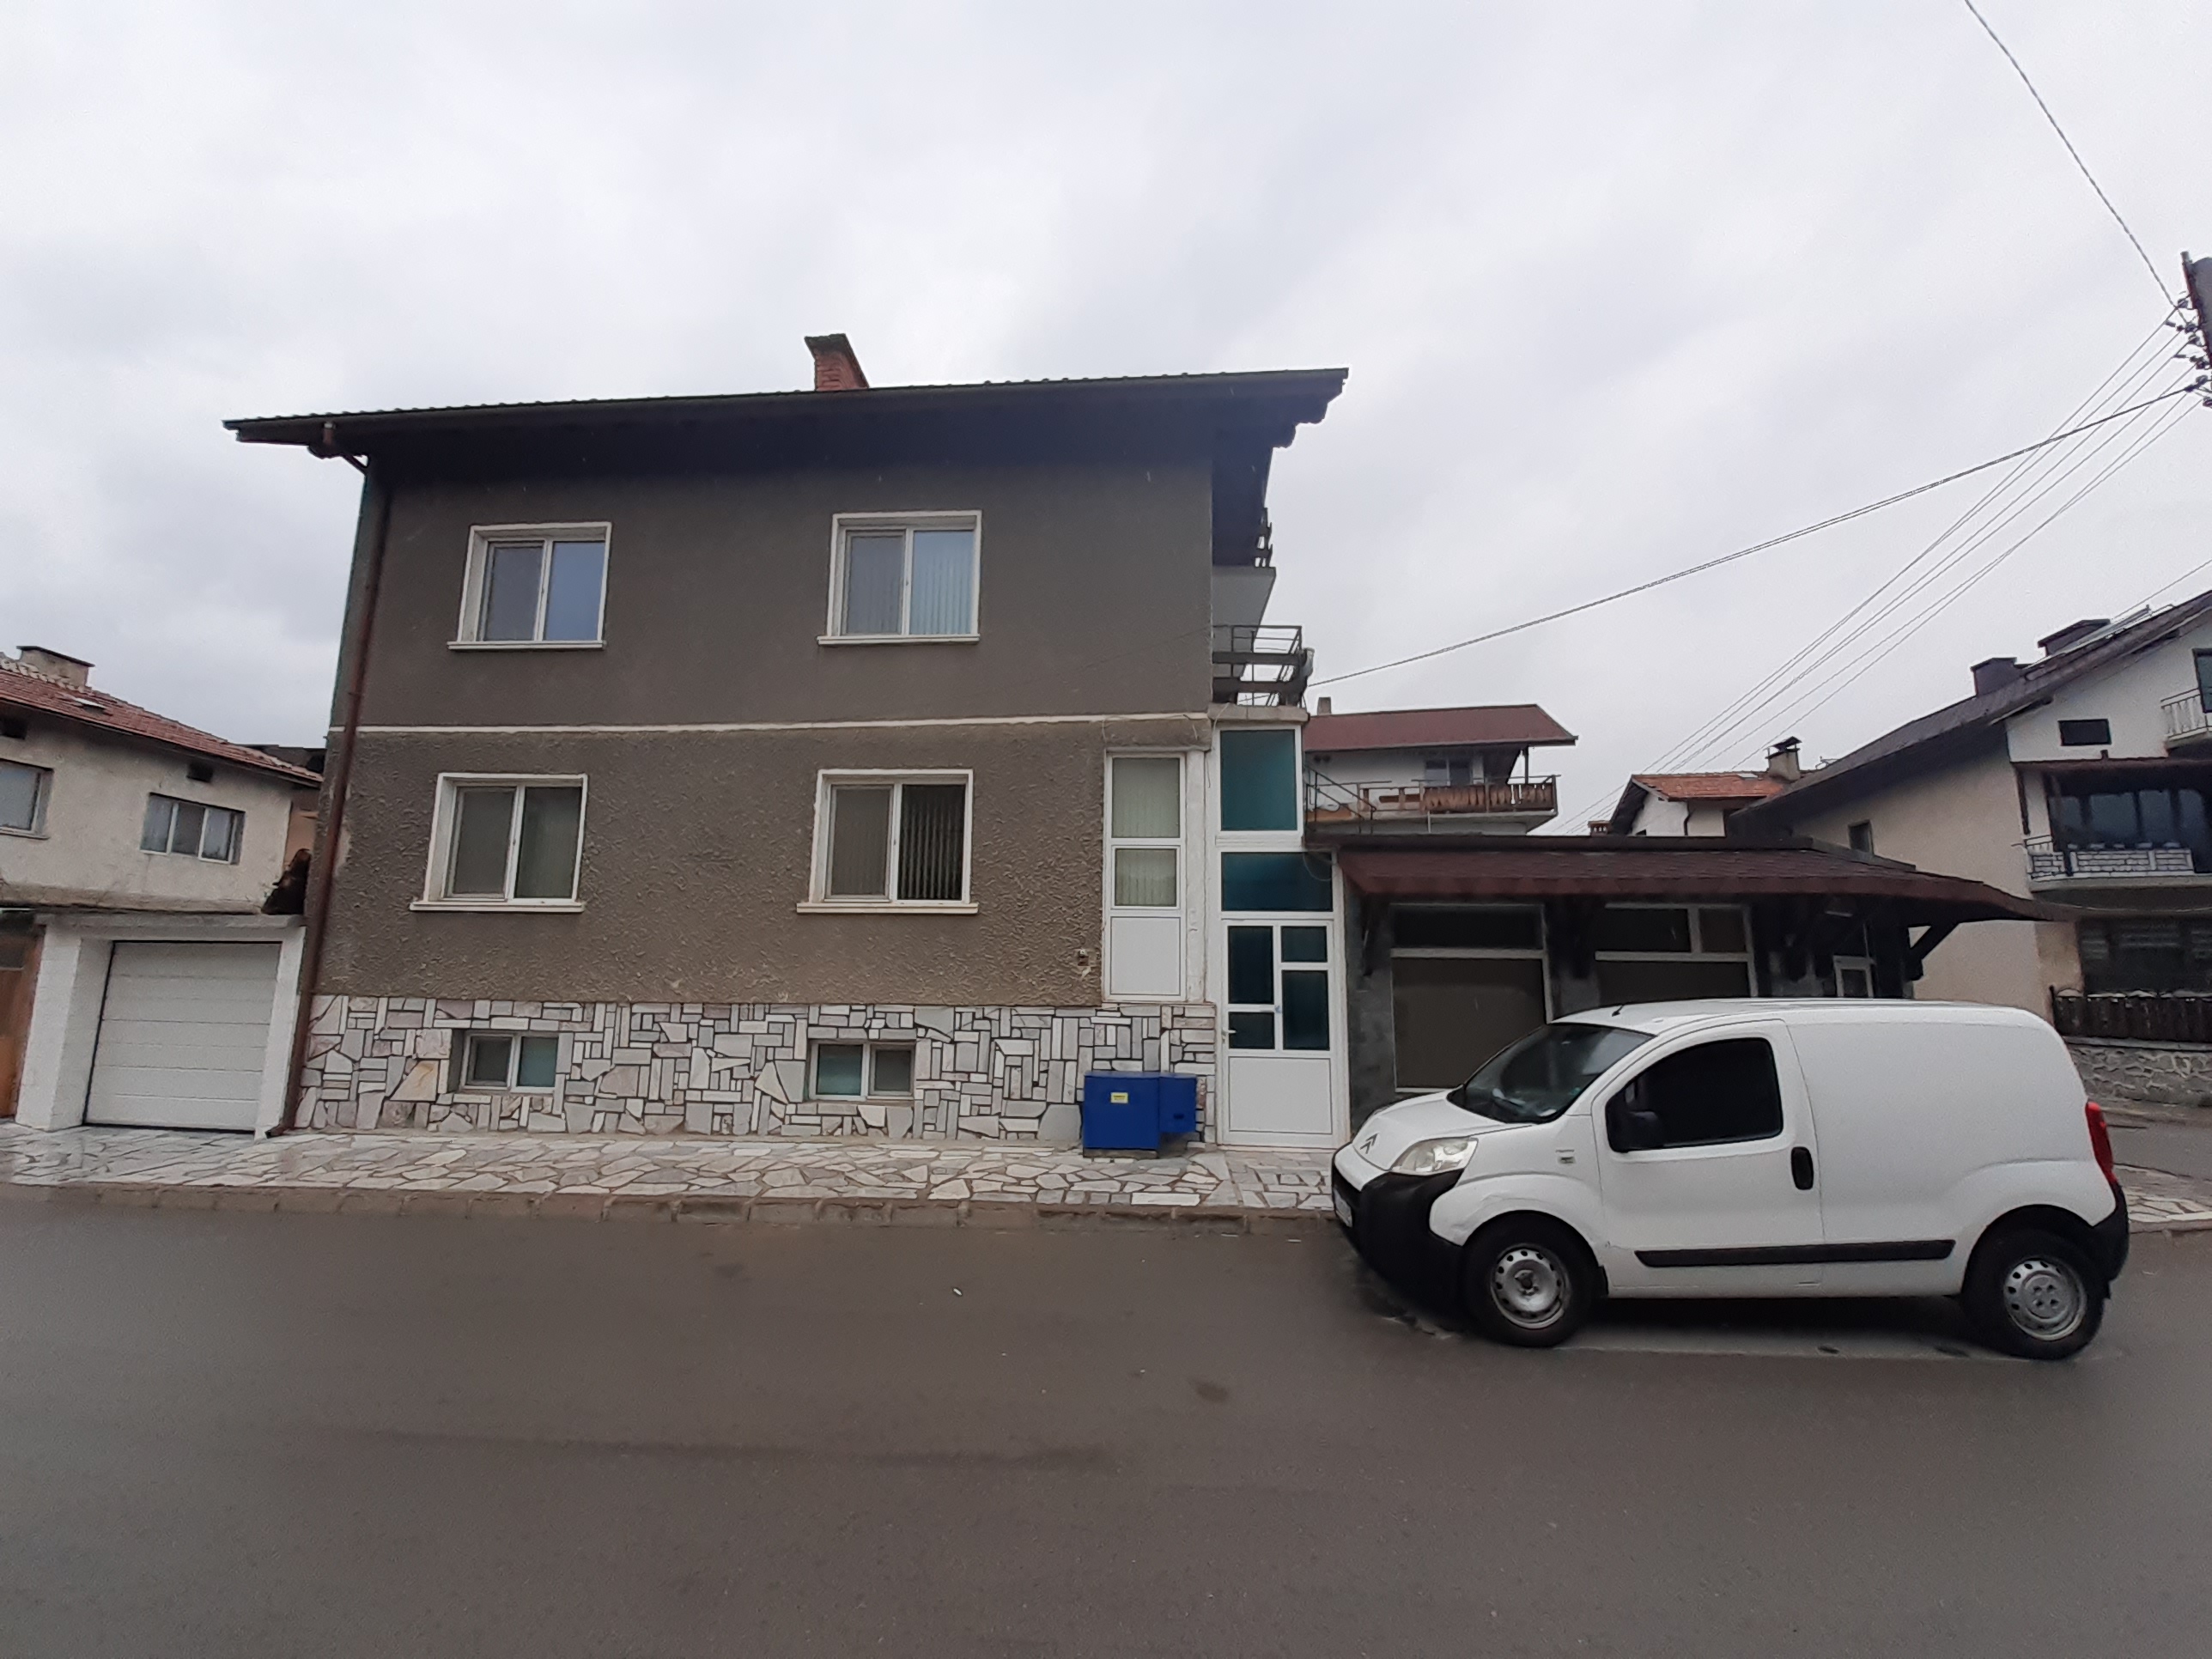 За продажба в Банско: Газифицирана масивна триетажна къща с търговско помещение